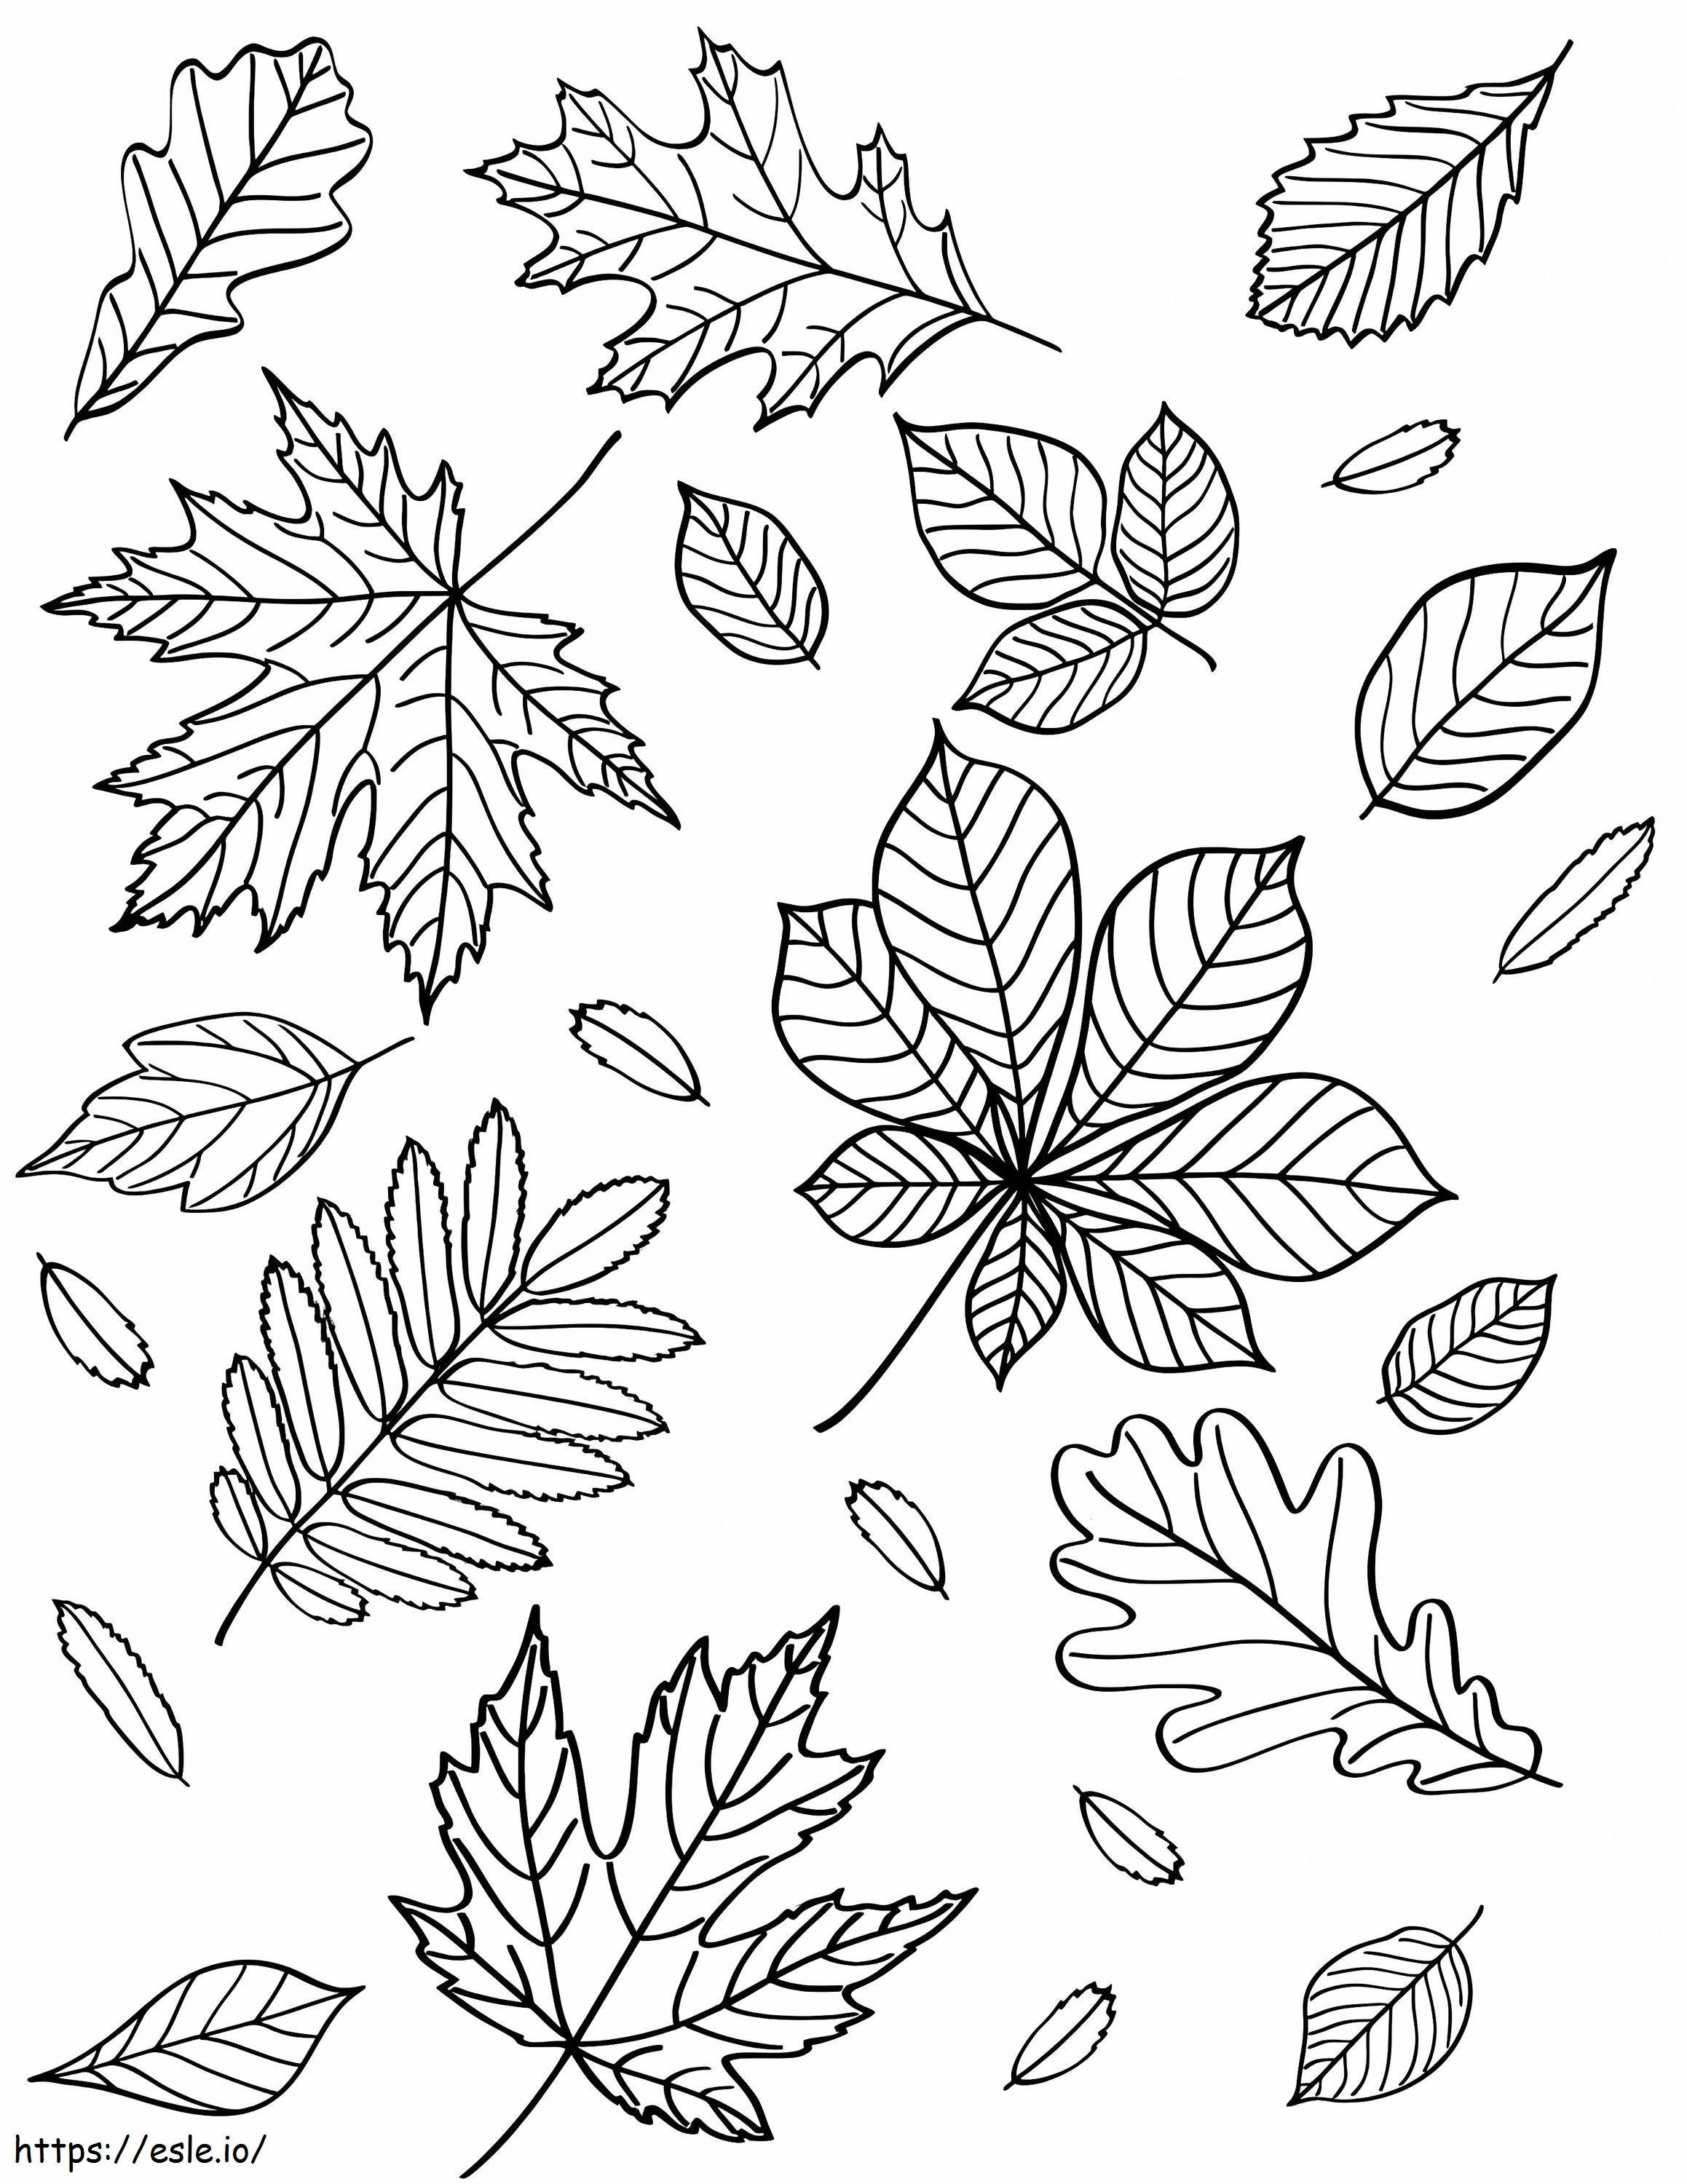 Herbstblätter 2 ausmalbilder